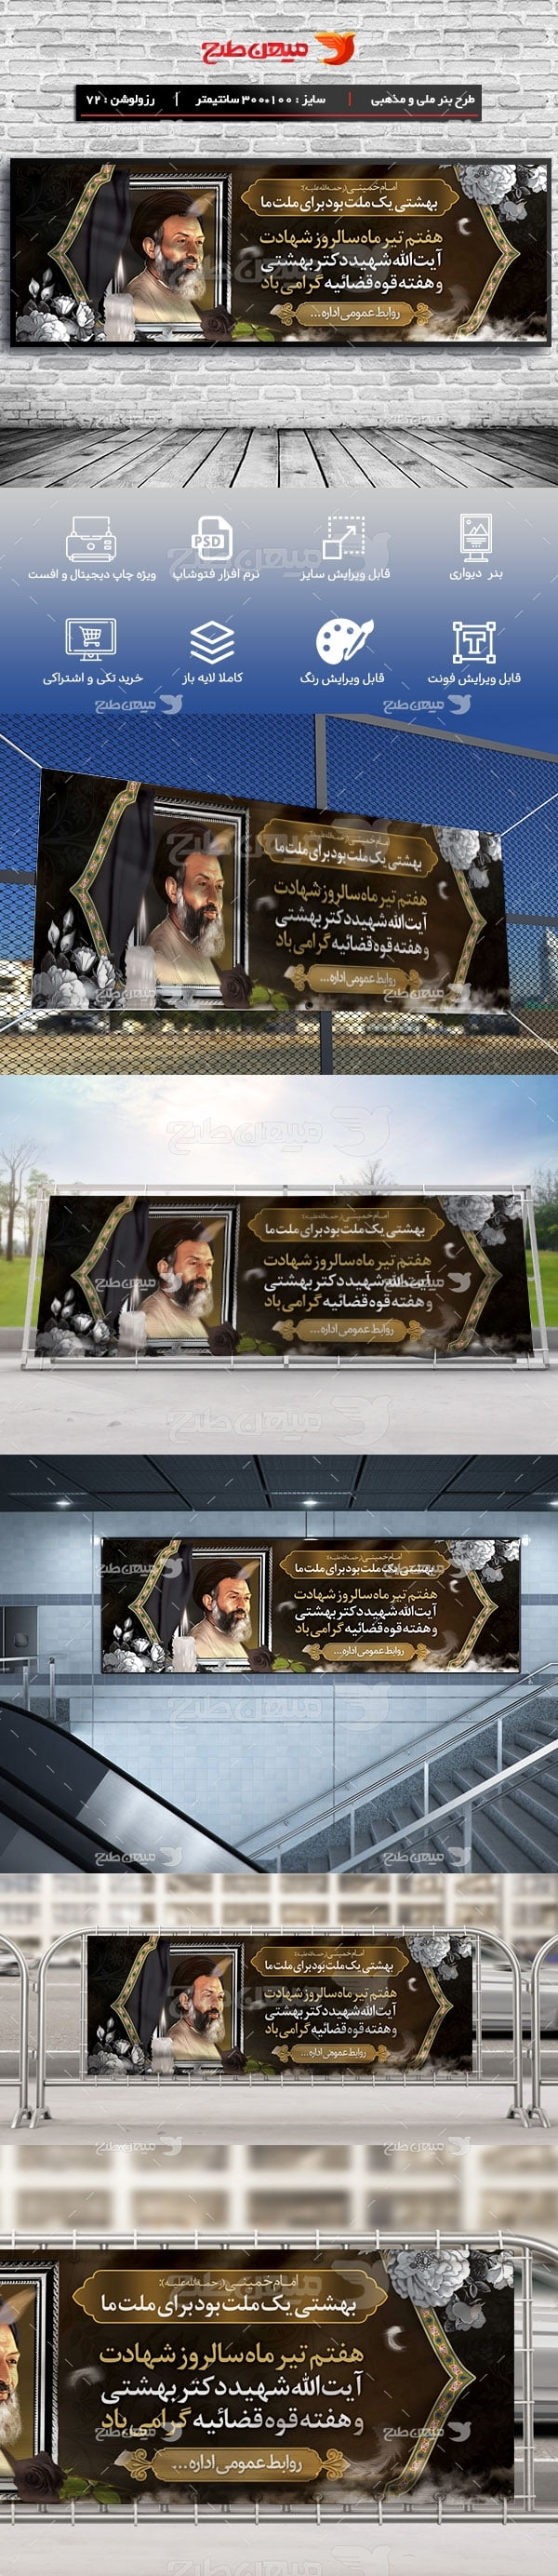 طرح لایه باز و پلاکاردی شهادت دکتر بهشتی